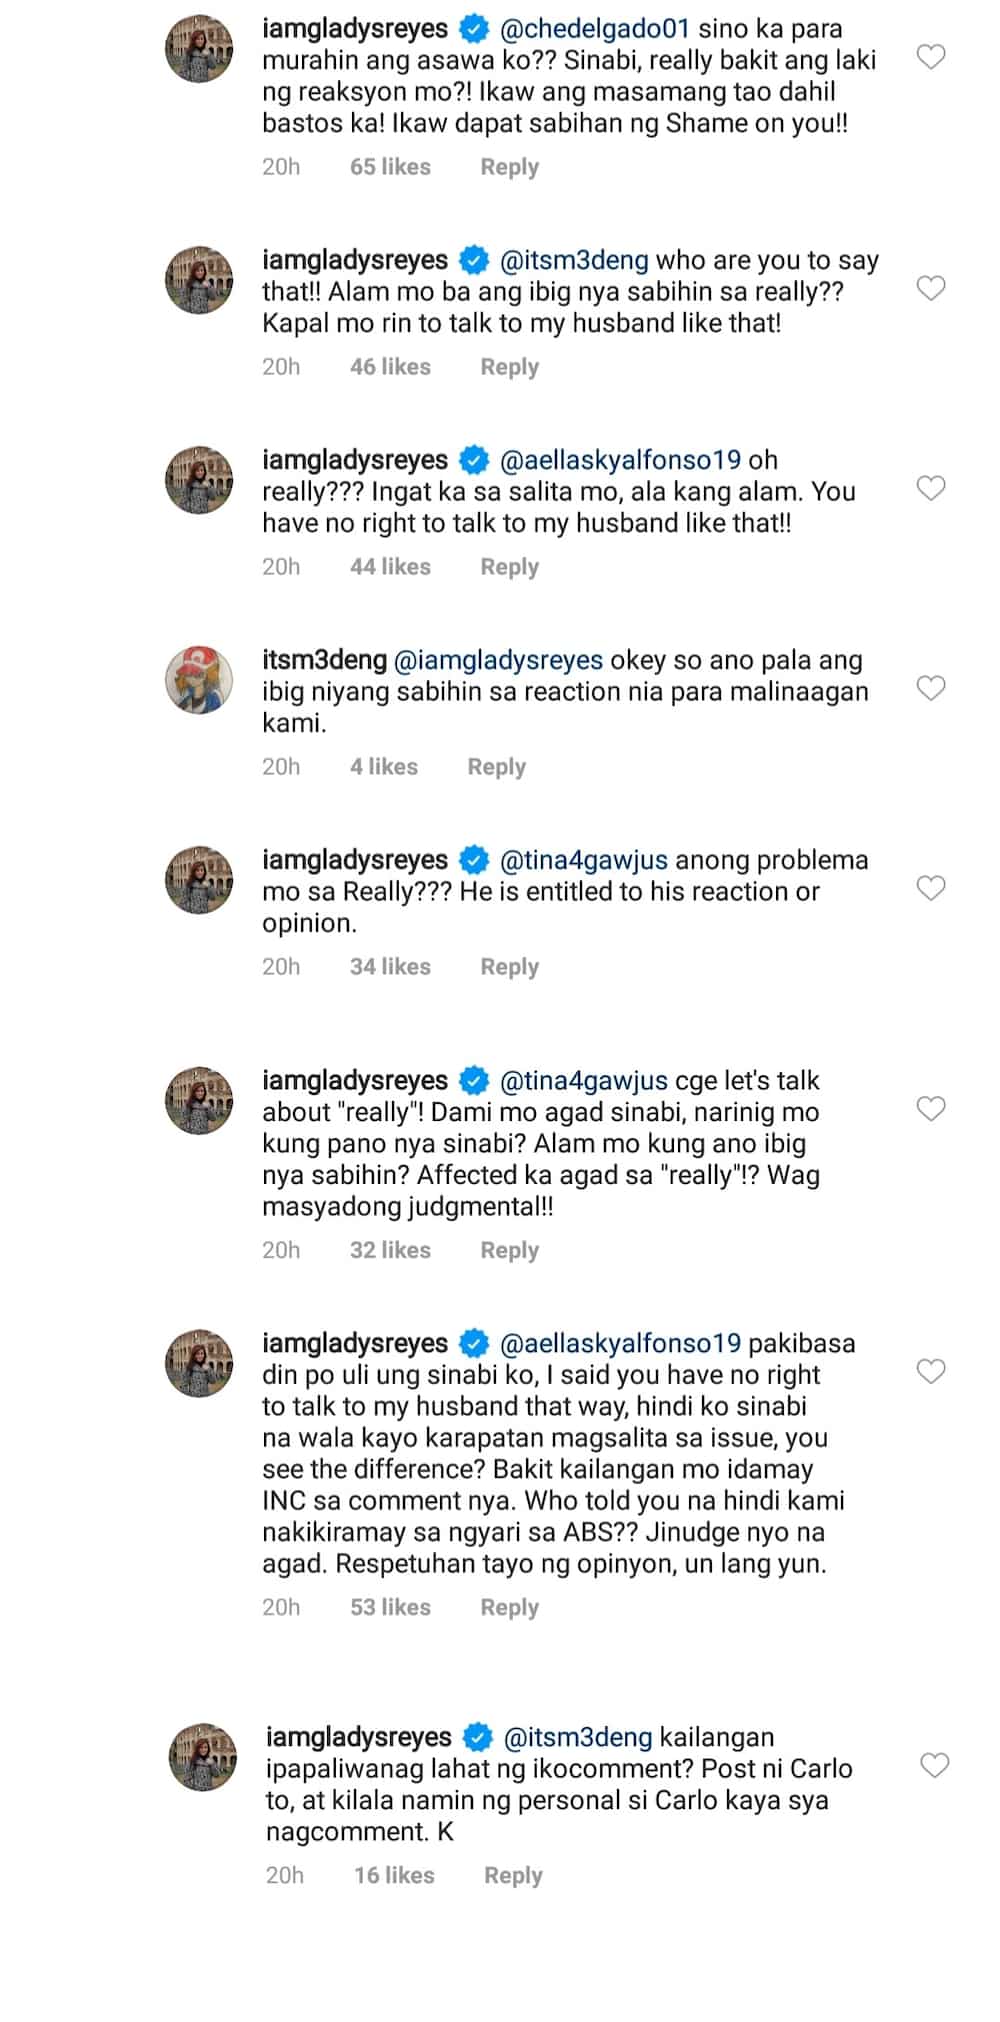 Gladys Reyes, rumesbak sa nag-mura sa kanyang asawa kaugnay ng ABS-CBN crisis